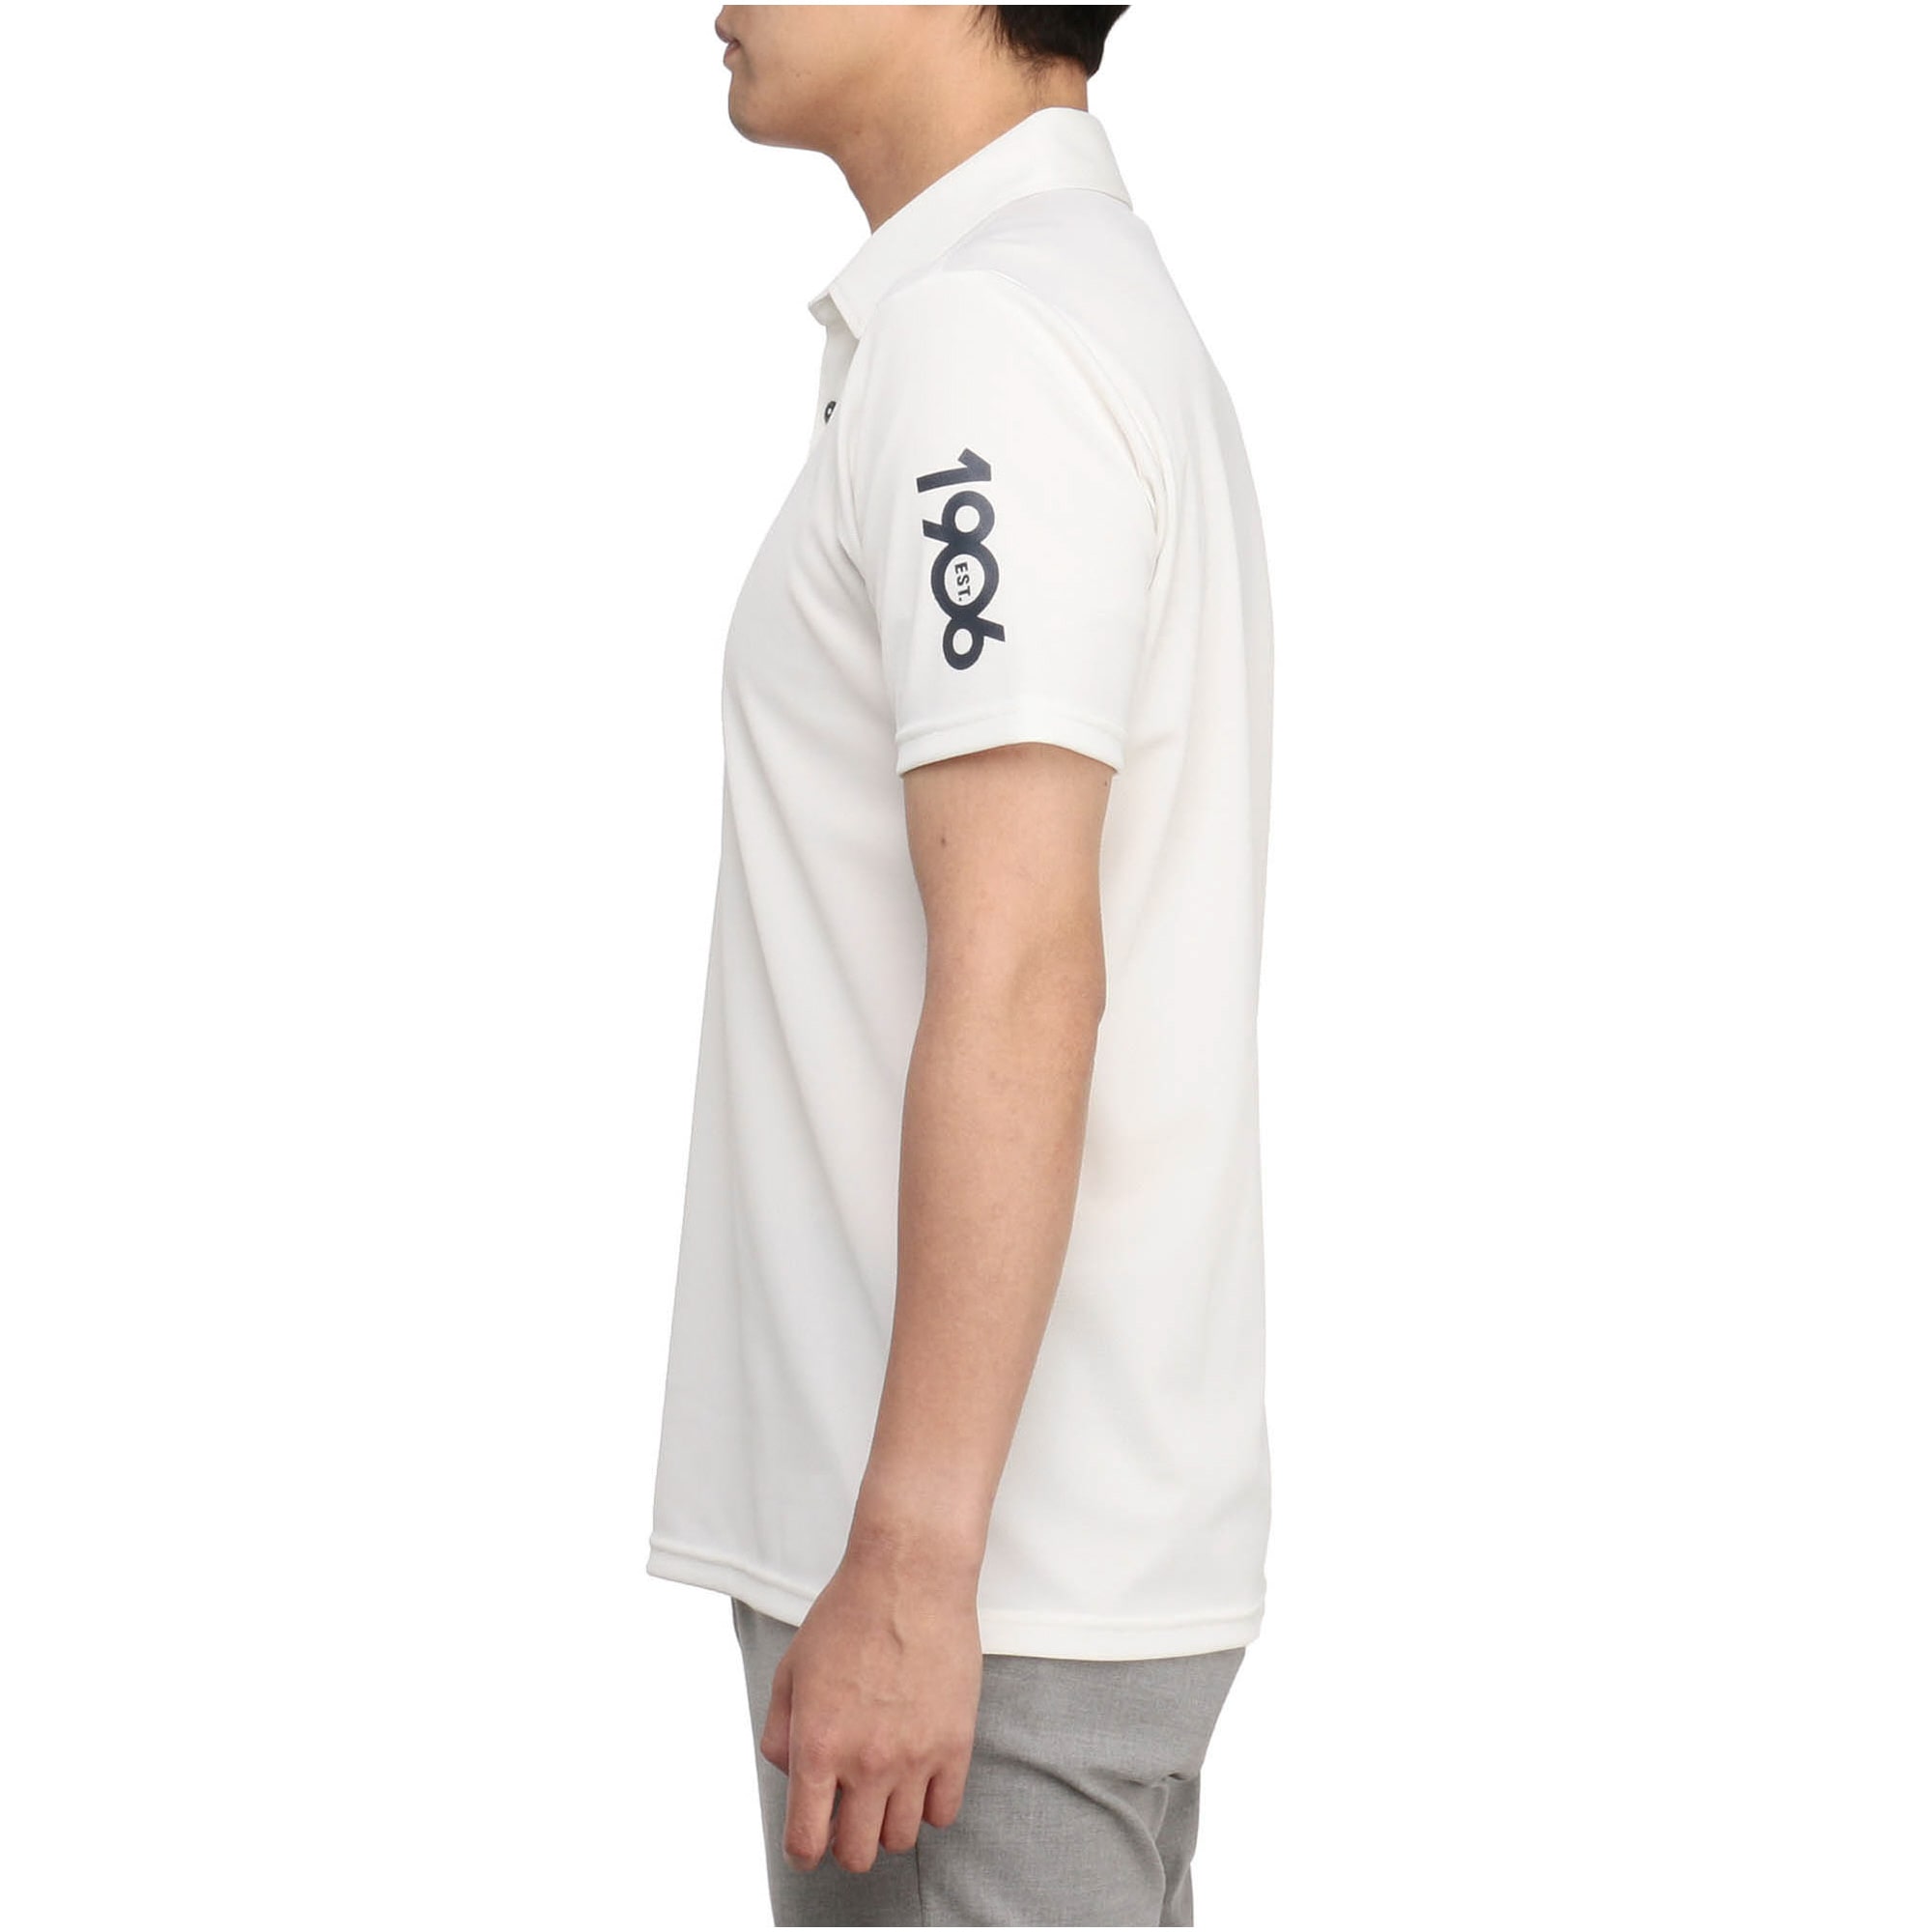 アイスタッチ半袖共衿シャツ[メンズ]|E2MAA025|半袖シャツ|ゴルフ